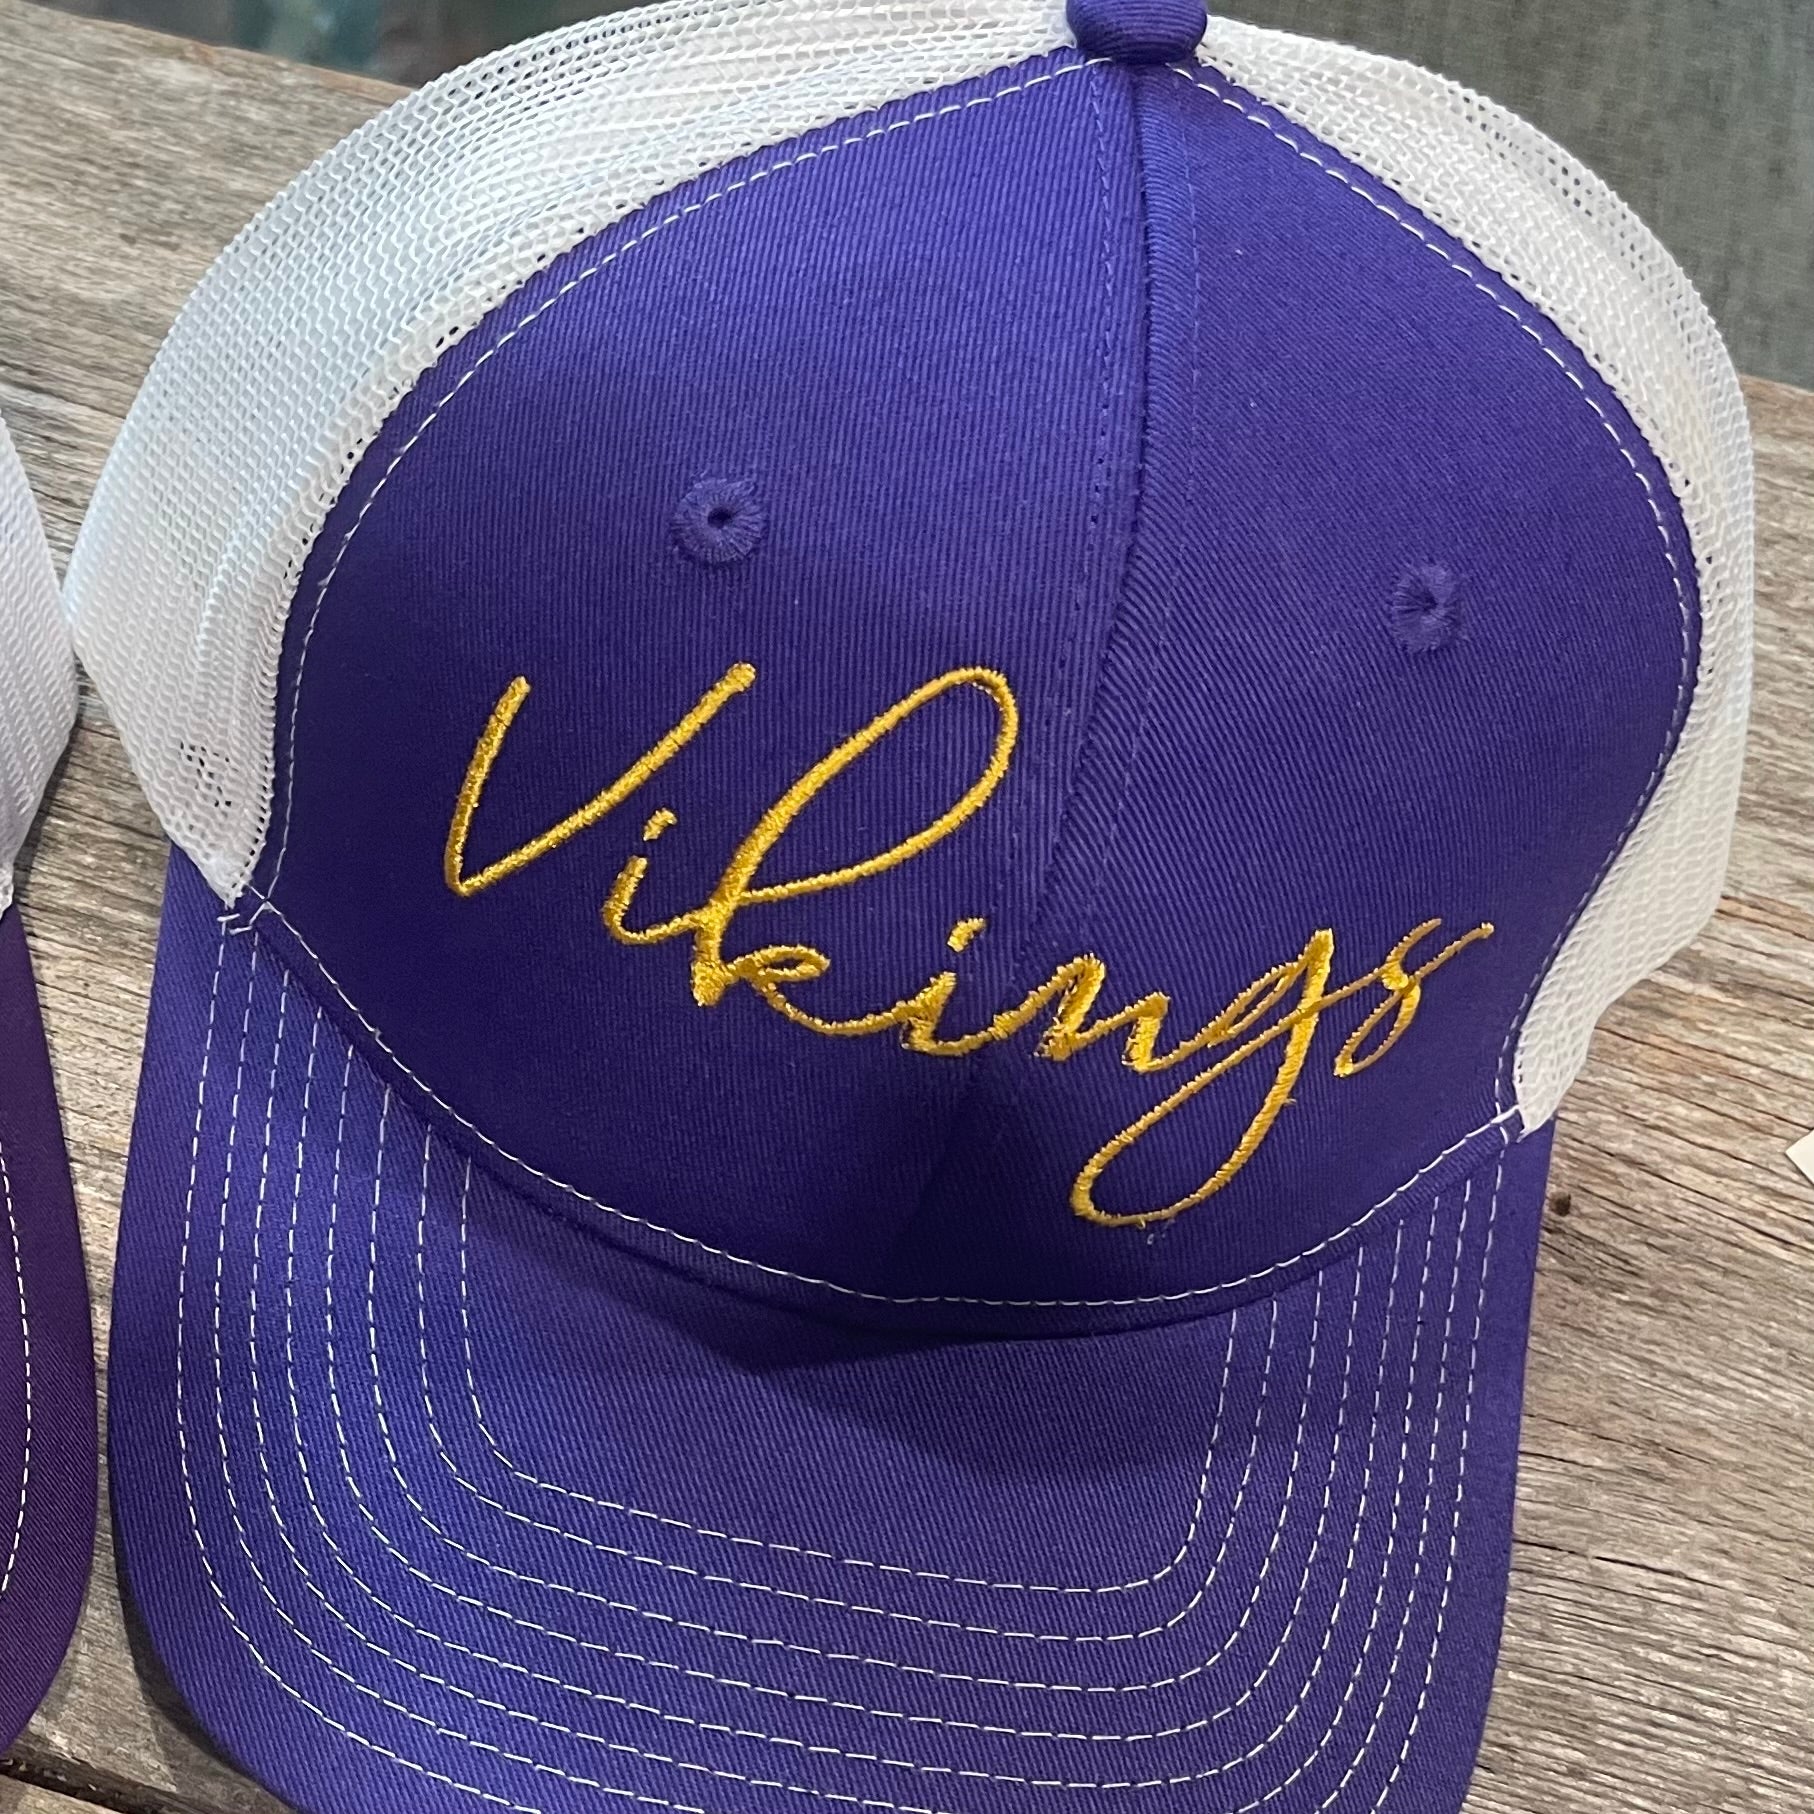 Vikings Ball-cap